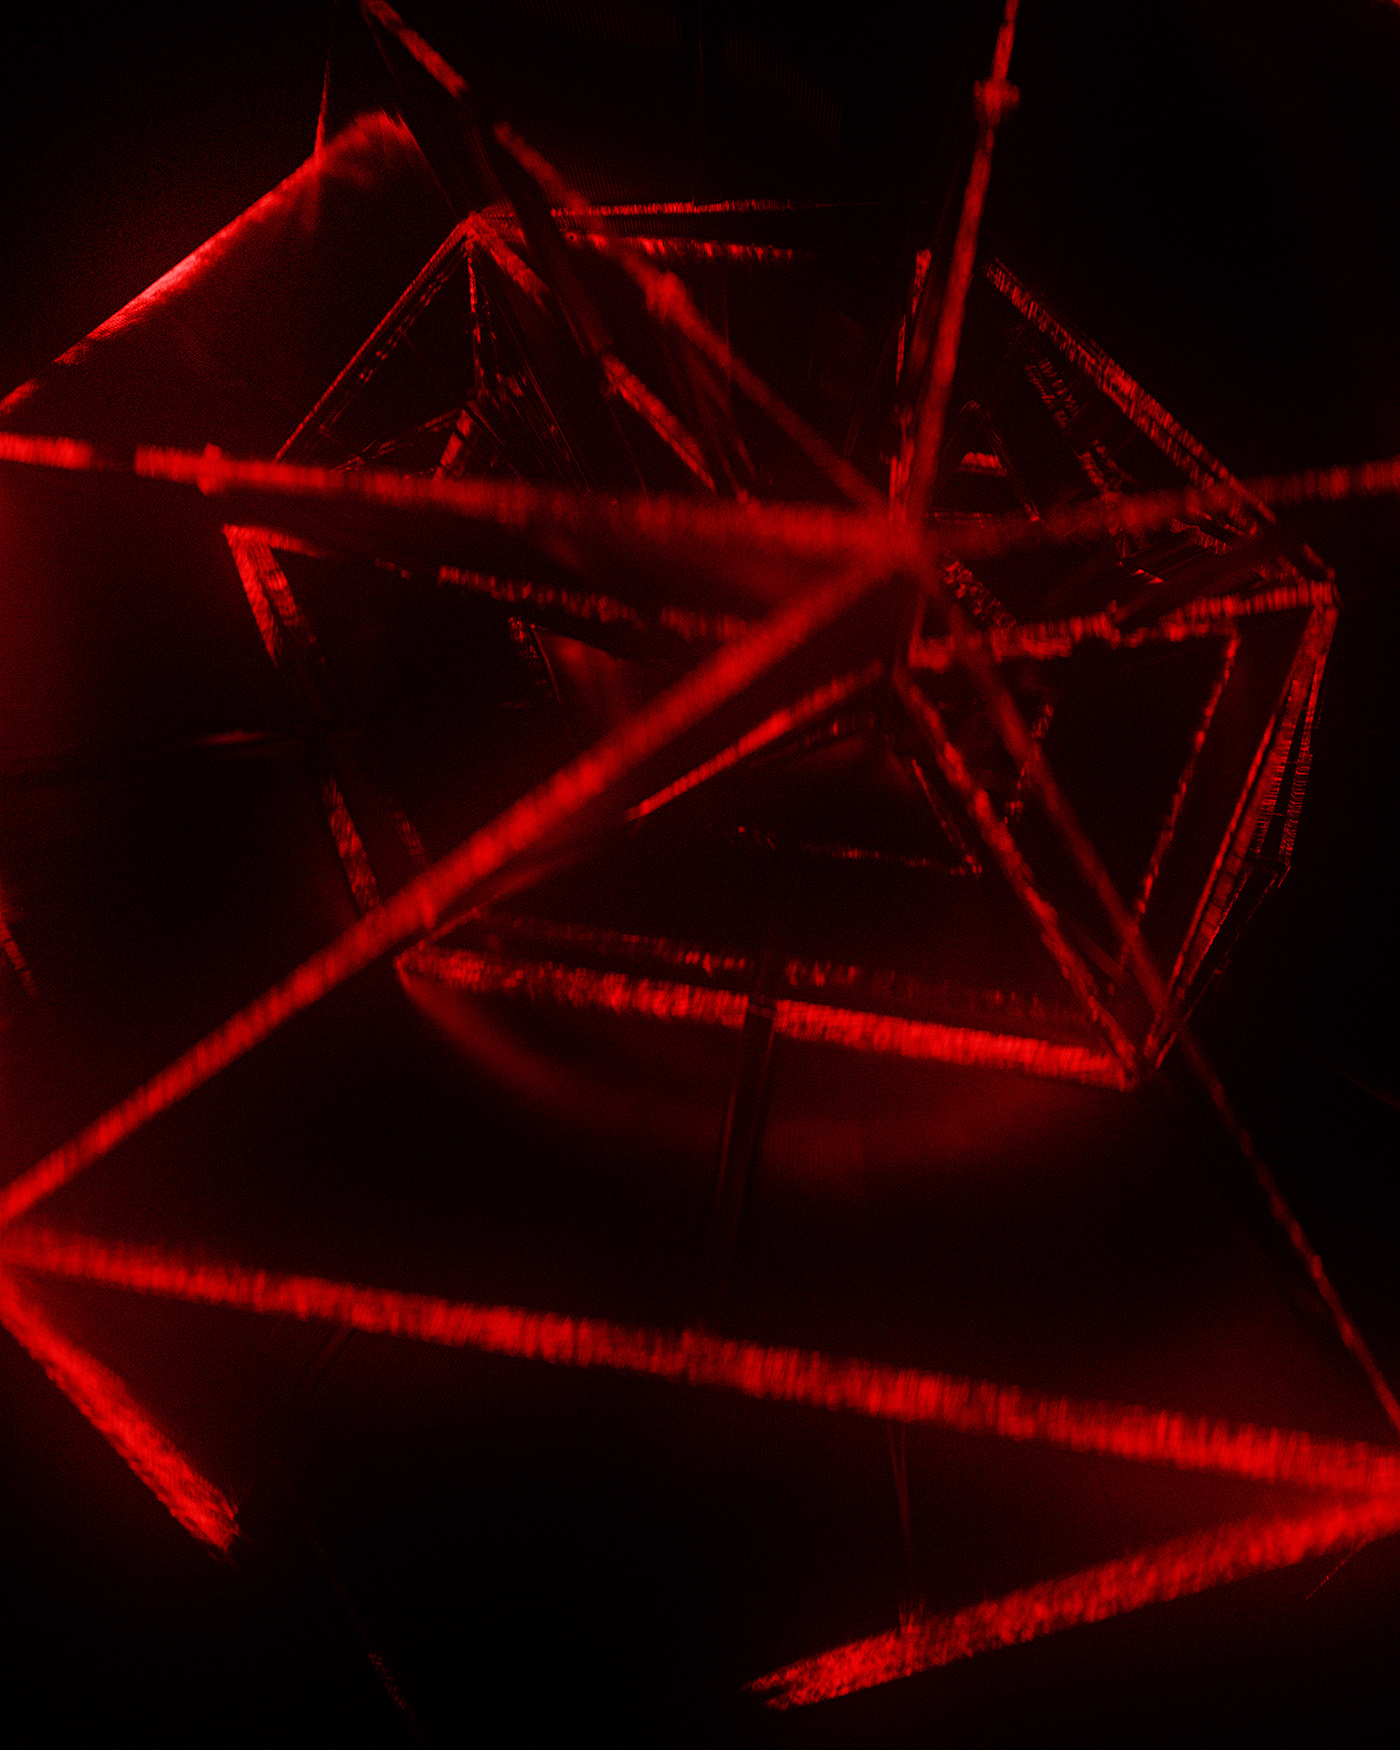 short film abstract geometric modern Digital Art  title sequence motion graphics  peace dreamnerd War